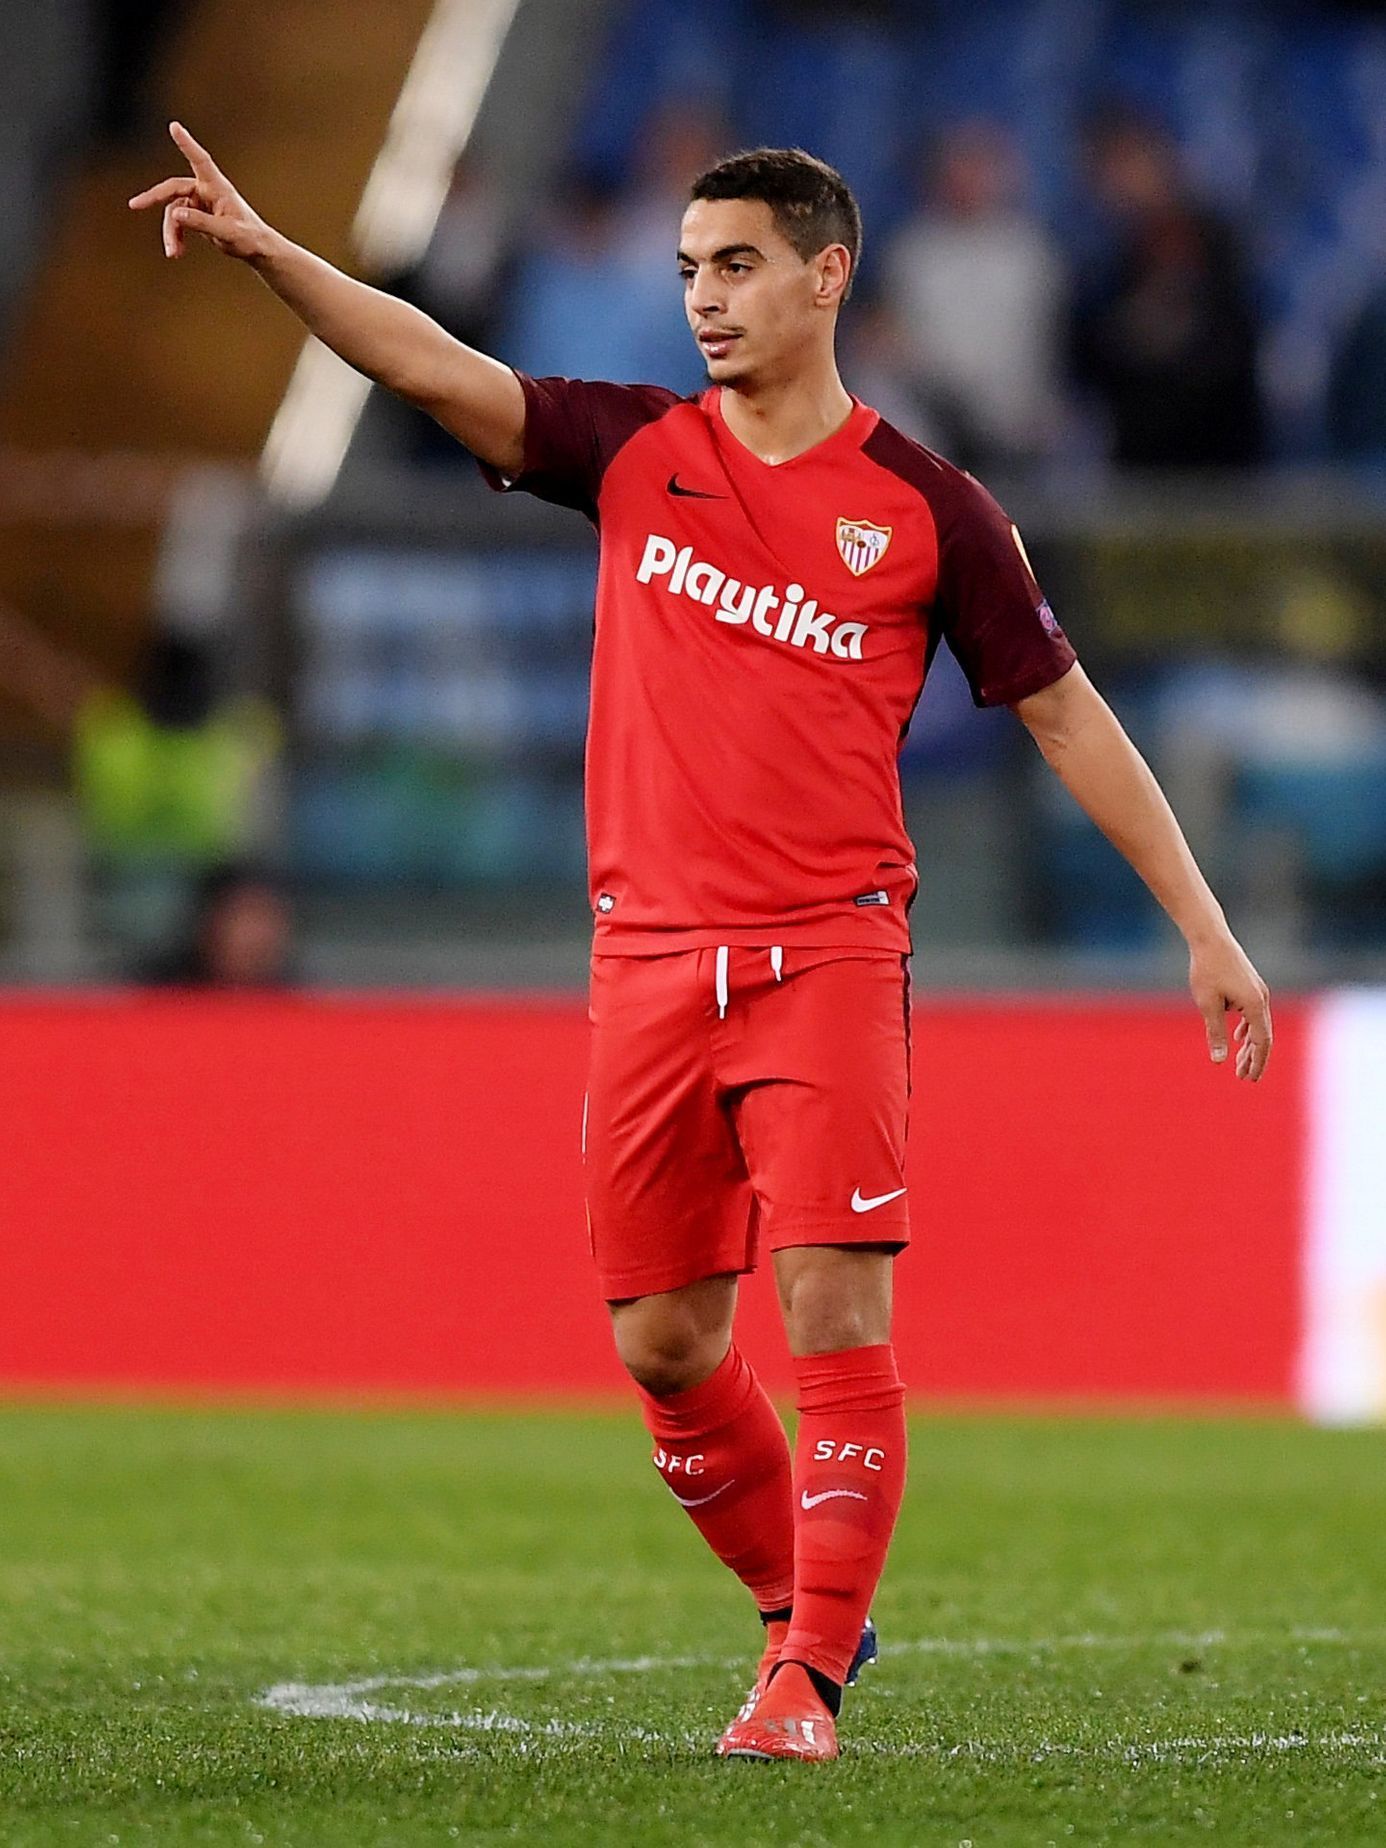 Sevilla v Evropské lize 2019: Wissam Ben Yedder